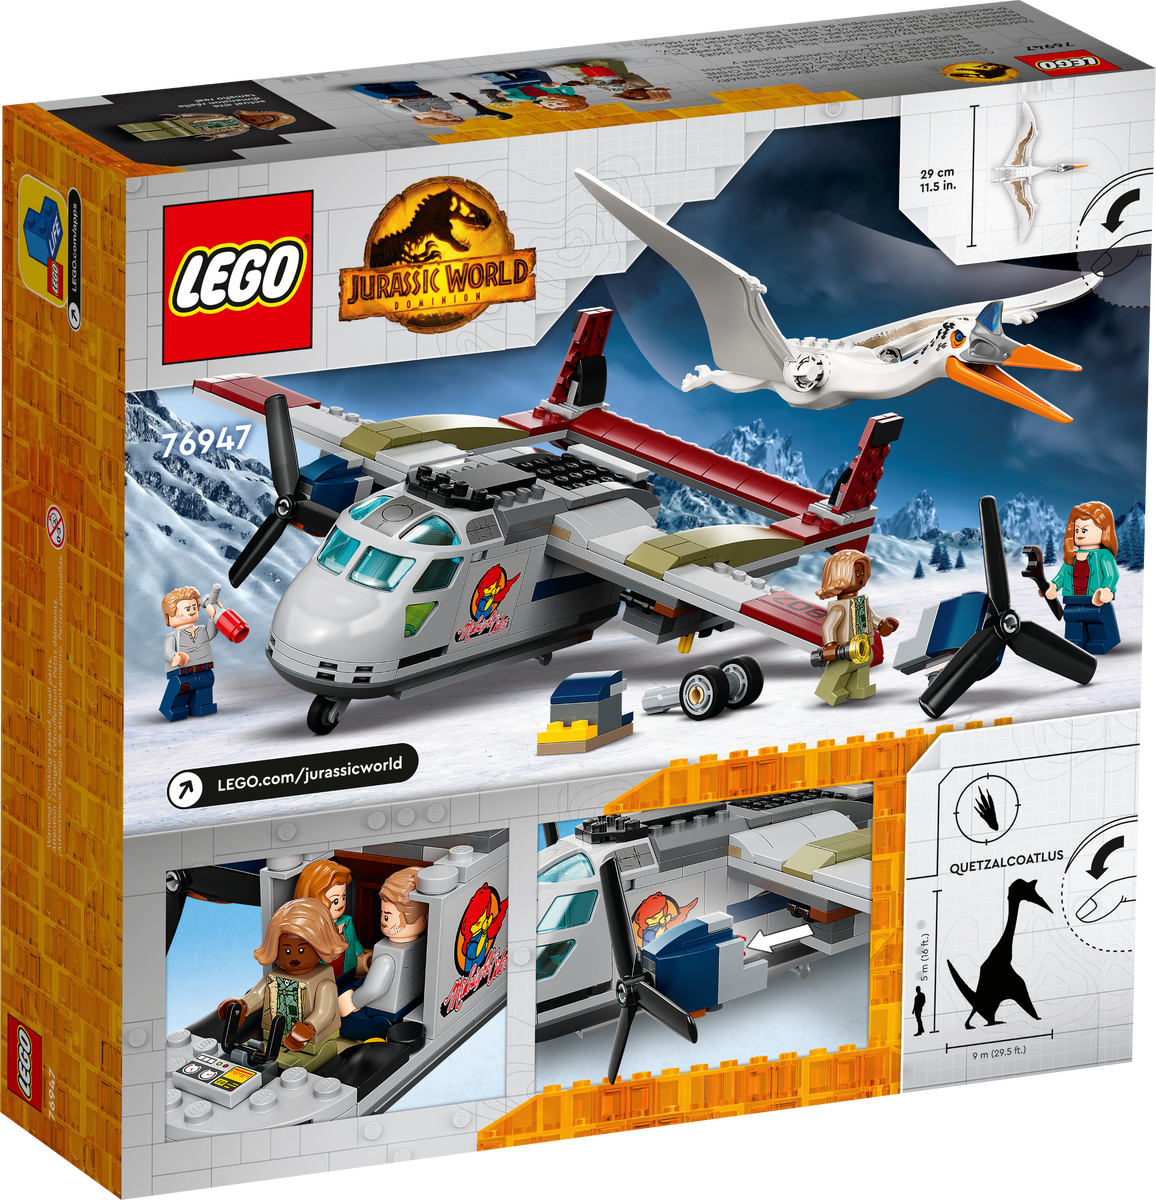 LEGO Jurassic World Emboscada Aerea del Quetzalcoatlus 76947